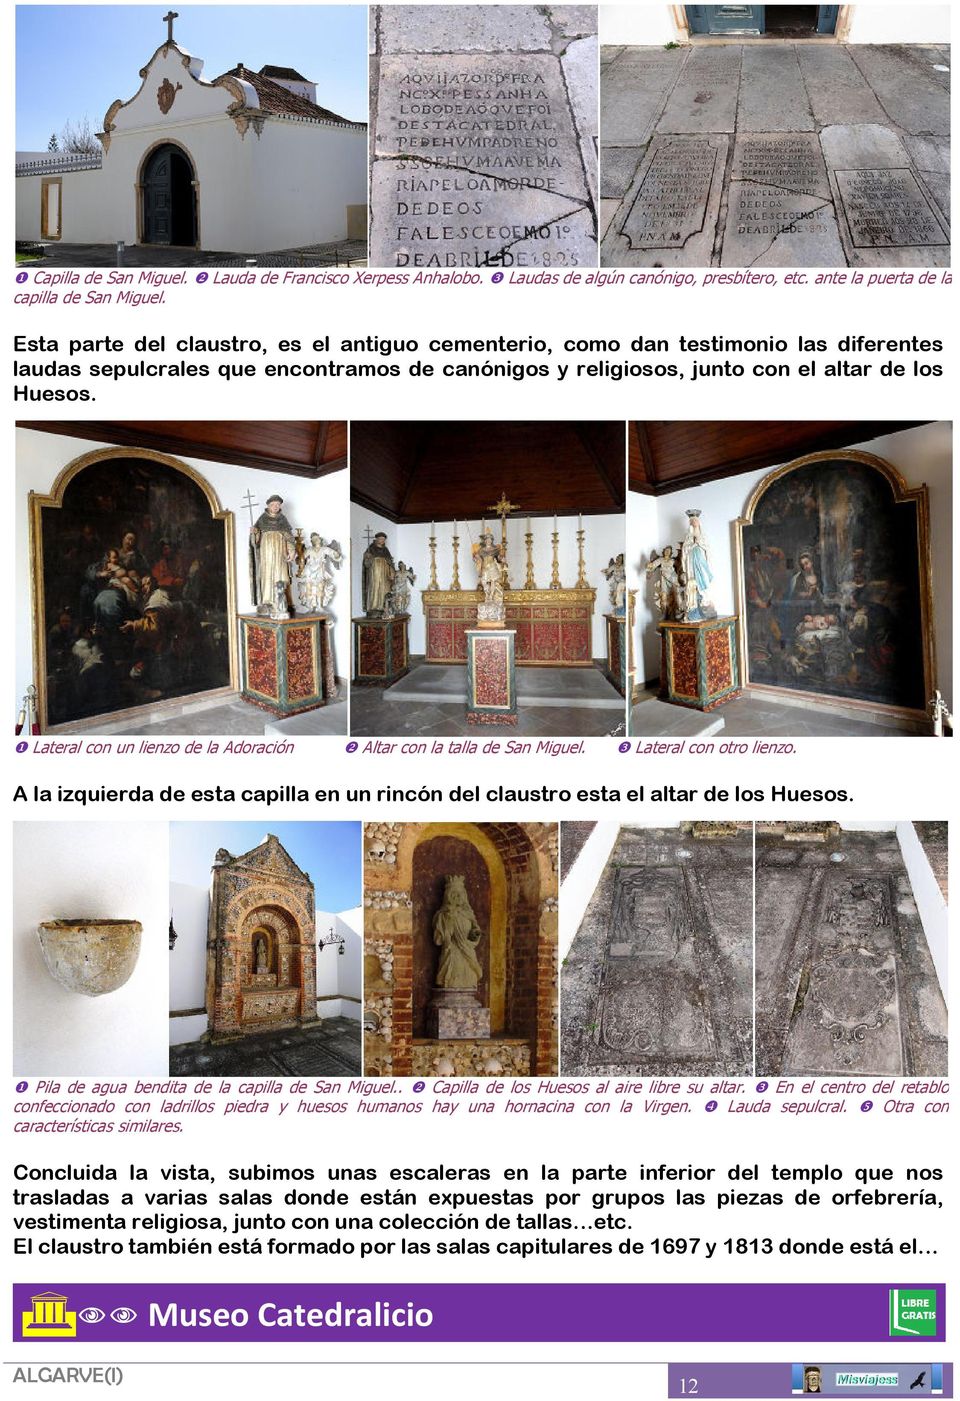 ❶ Lateral con un lienzo de la Adoración ❷ Altar con la talla de San Miguel. ❸ Lateral con otro lienzo. A la izquierda de esta capilla en un rincón del claustro esta el altar de los Huesos.